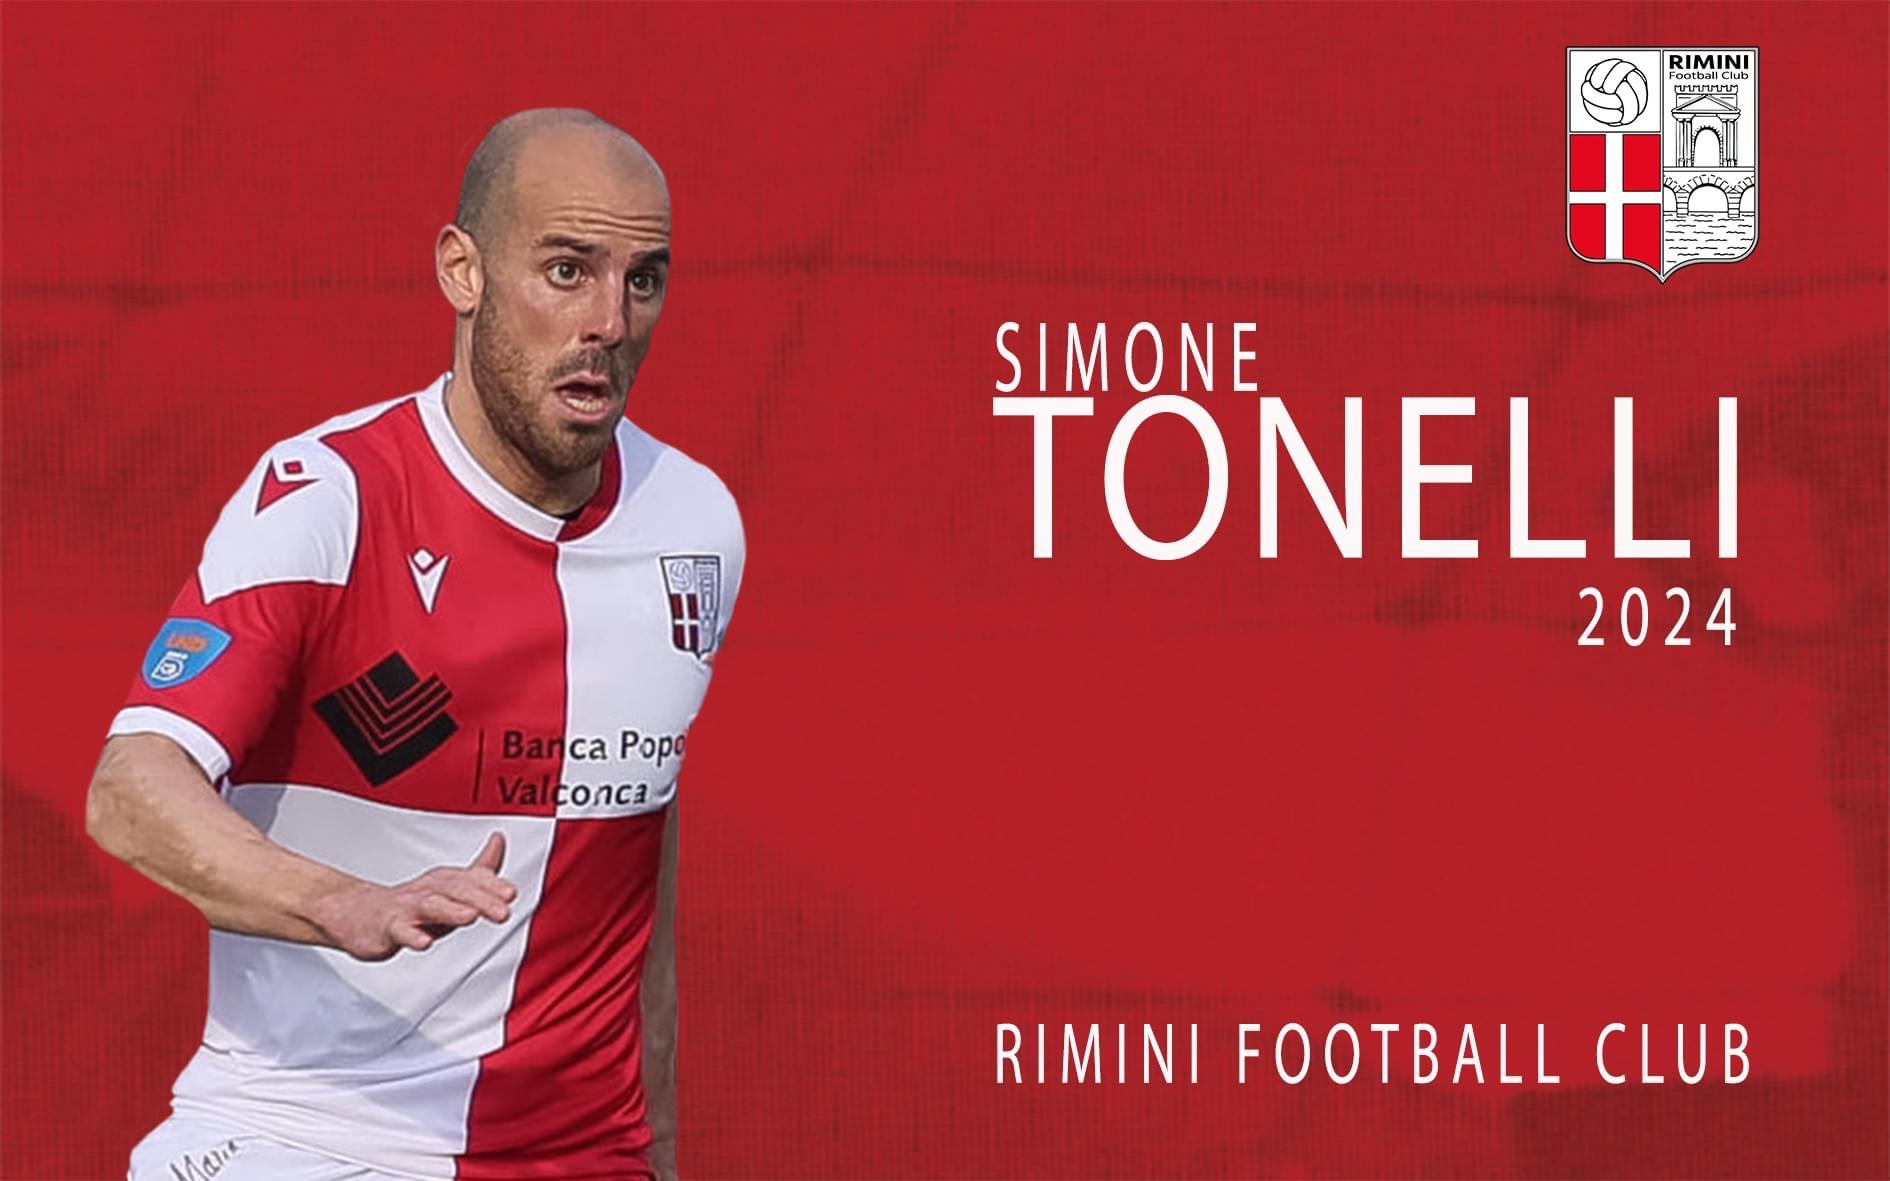 Rimini Football Club rinnova con Simone Tonelli.